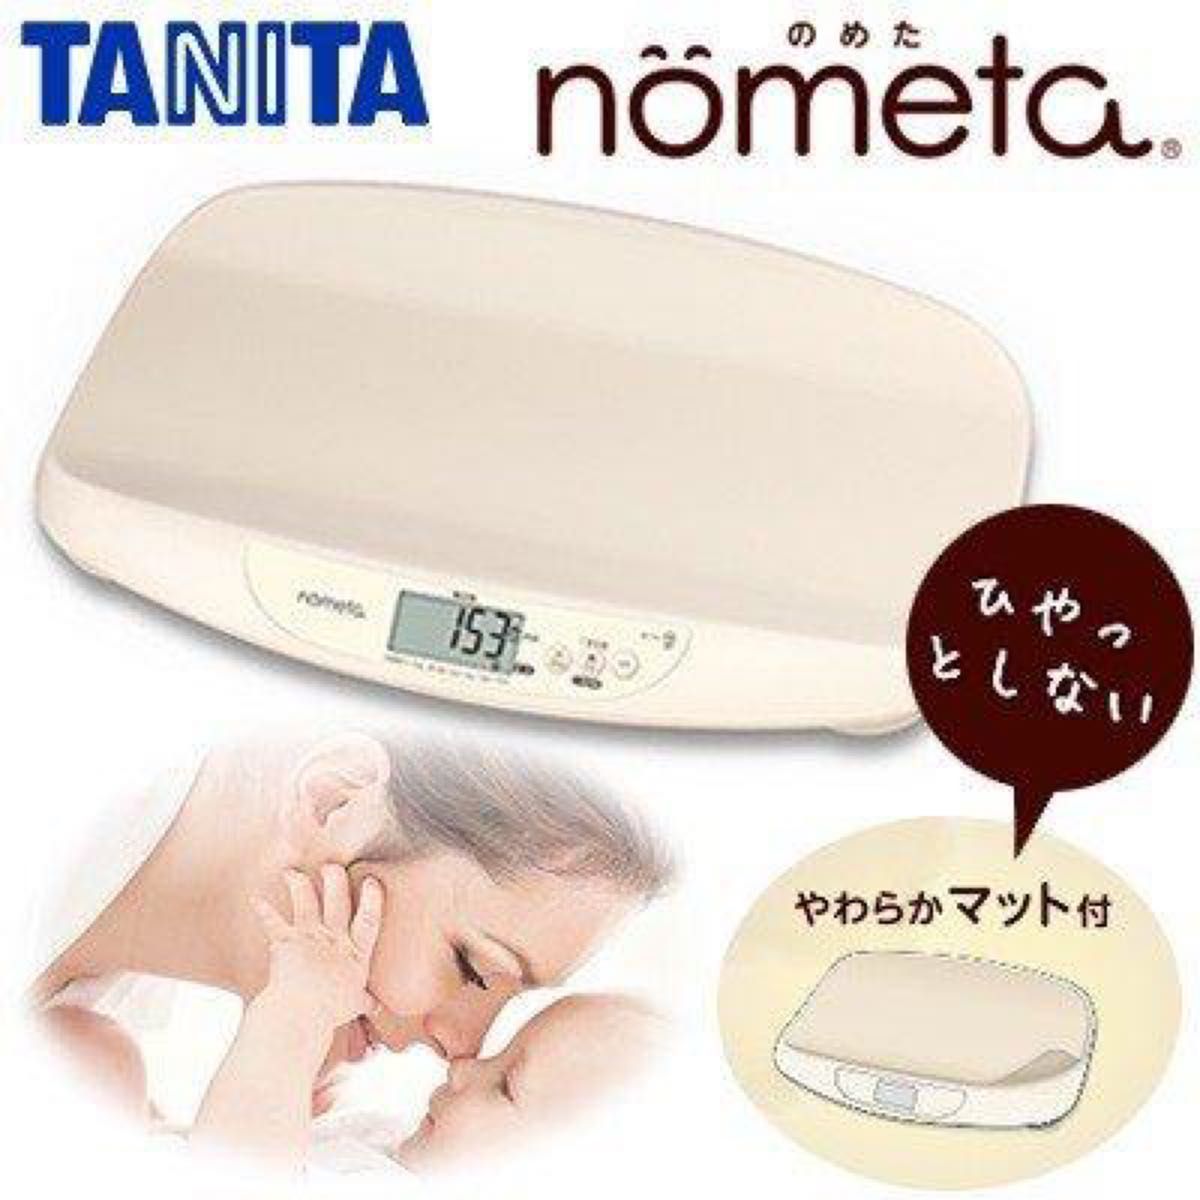 nometa TANITA ベビースケール タニタ のめた 授乳量機能付ベビースケール 授乳量機能付 体重計 アイボリー 計量範囲